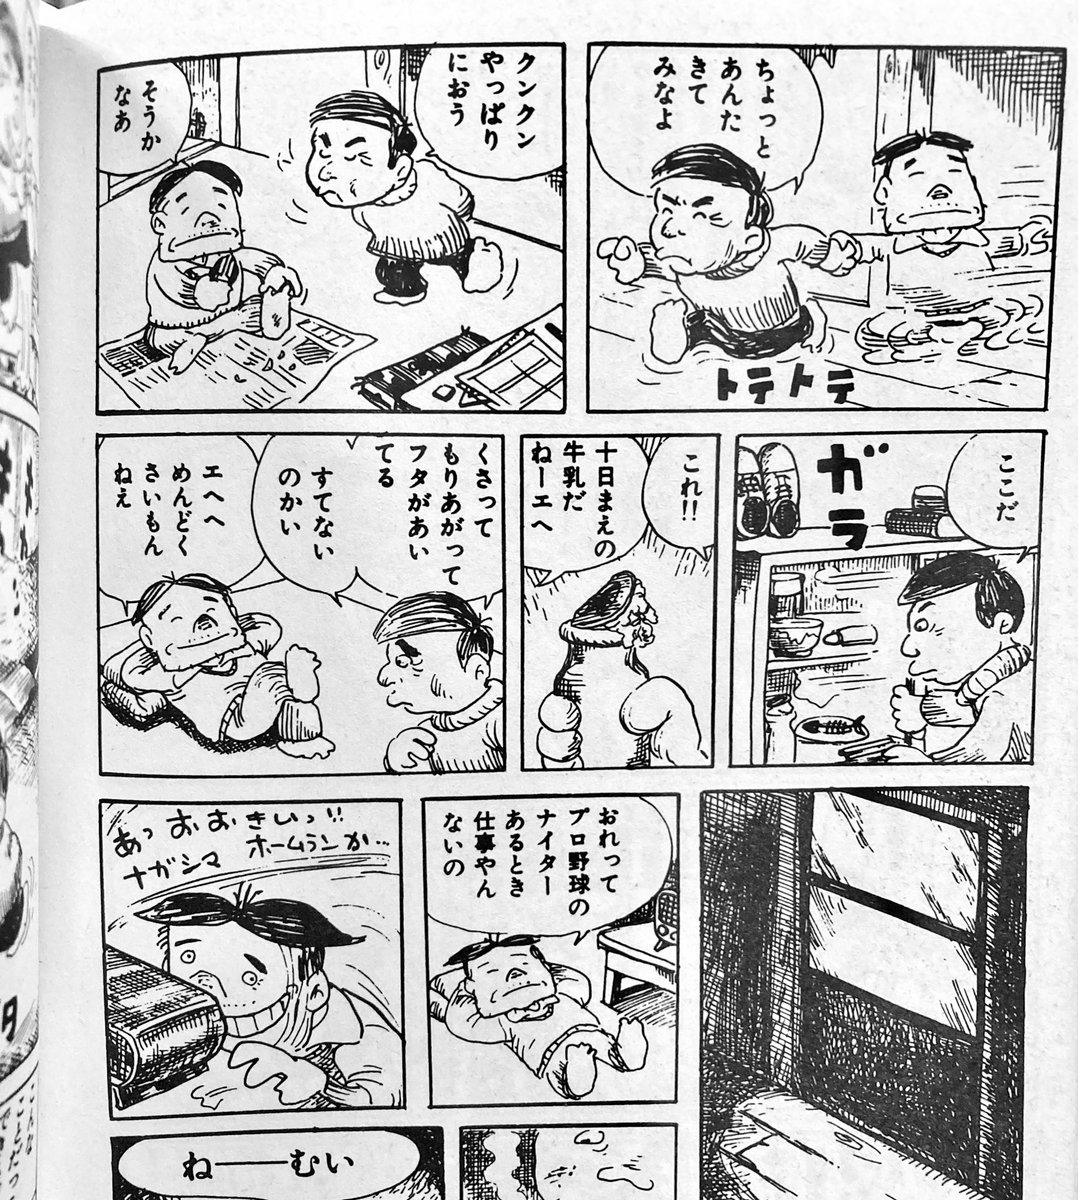 あと、よこたとくお先生というと長谷邦夫先生が滝田ゆうタッチで描いたトキワ荘のスケッチが忘れられない。ズボラでマイペースだけど愛されキャラだったんだろうなあ。 